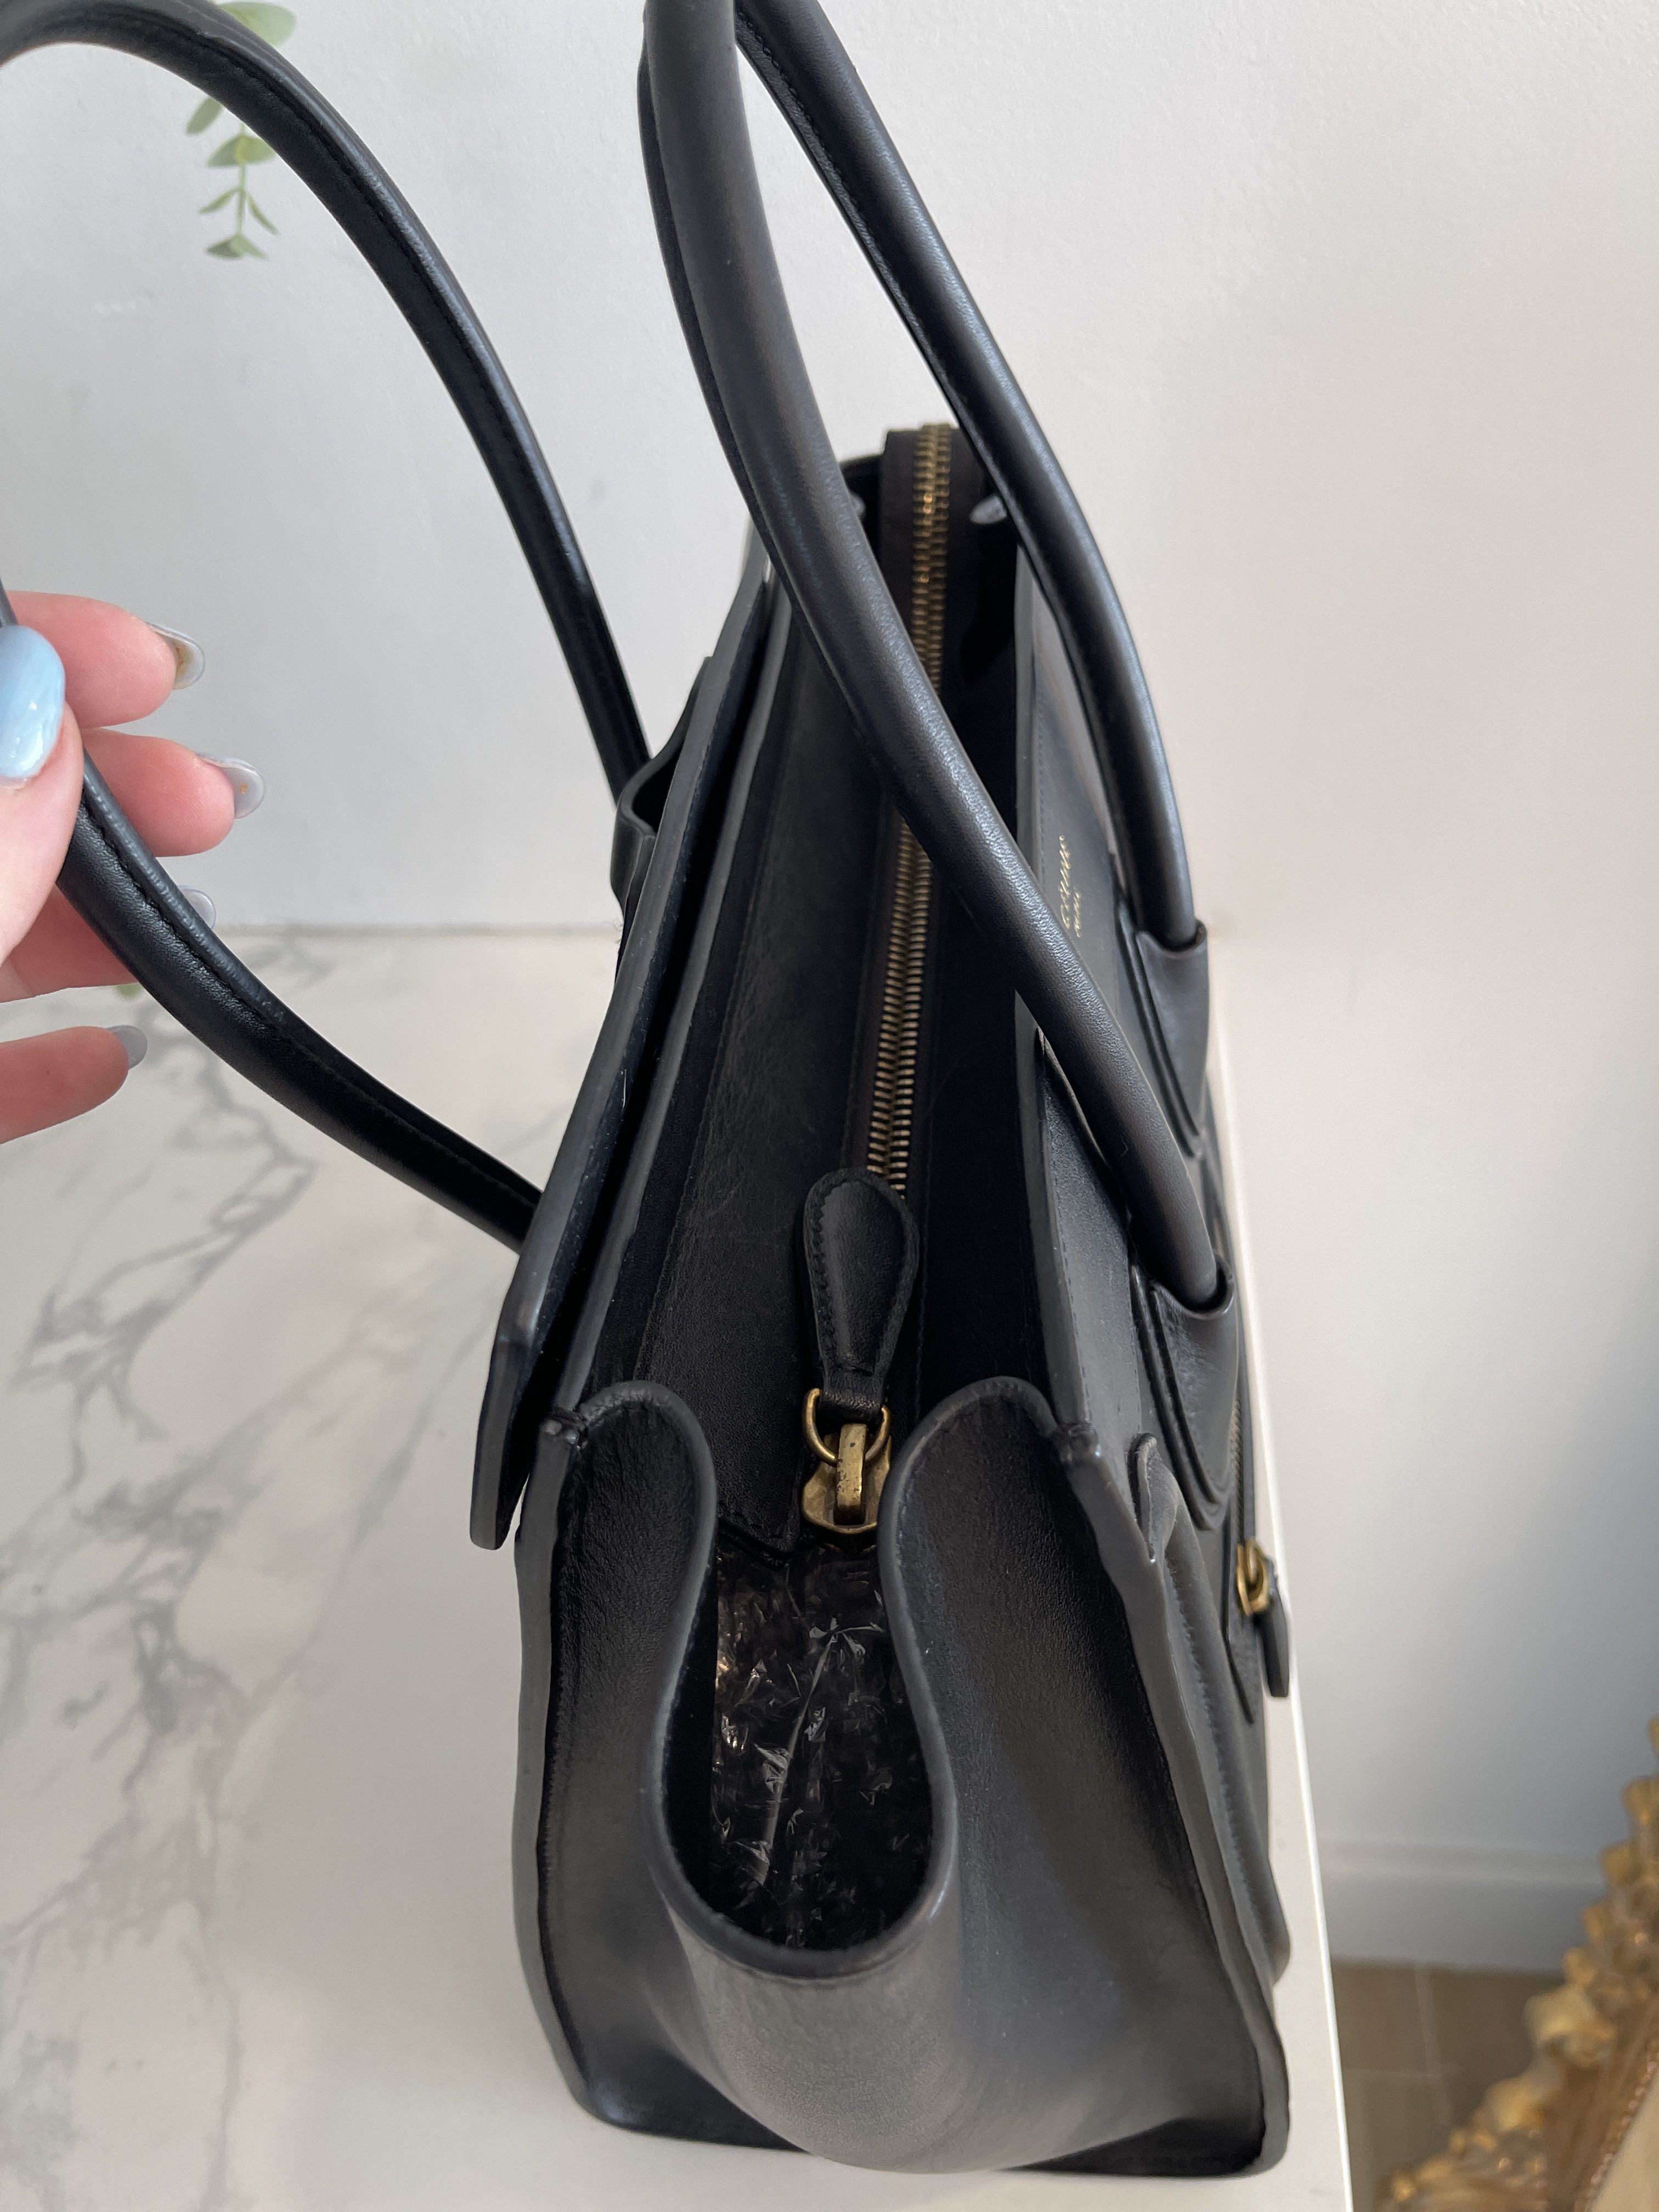 NEW* Celine Black Luggage Bag- Drummed Calf Skin/ Medium. RRP £1800